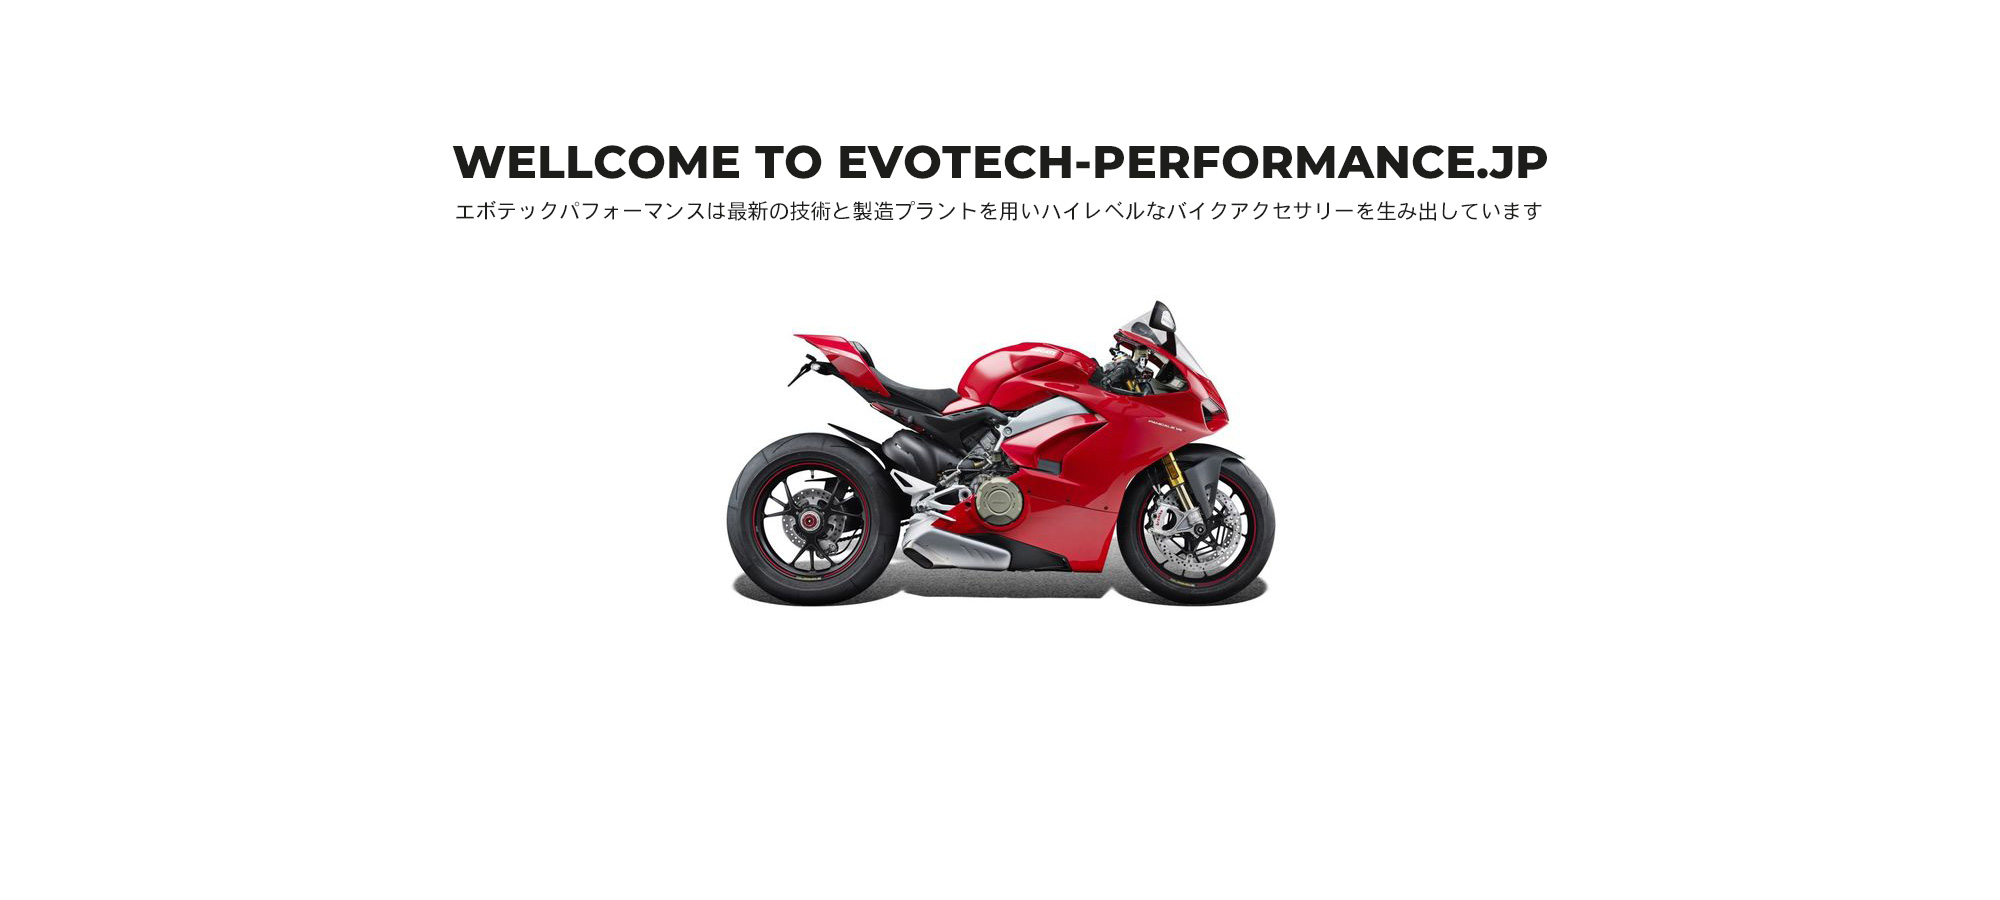 Evotech Performance エボテックパフォーマンス モーターサイクル